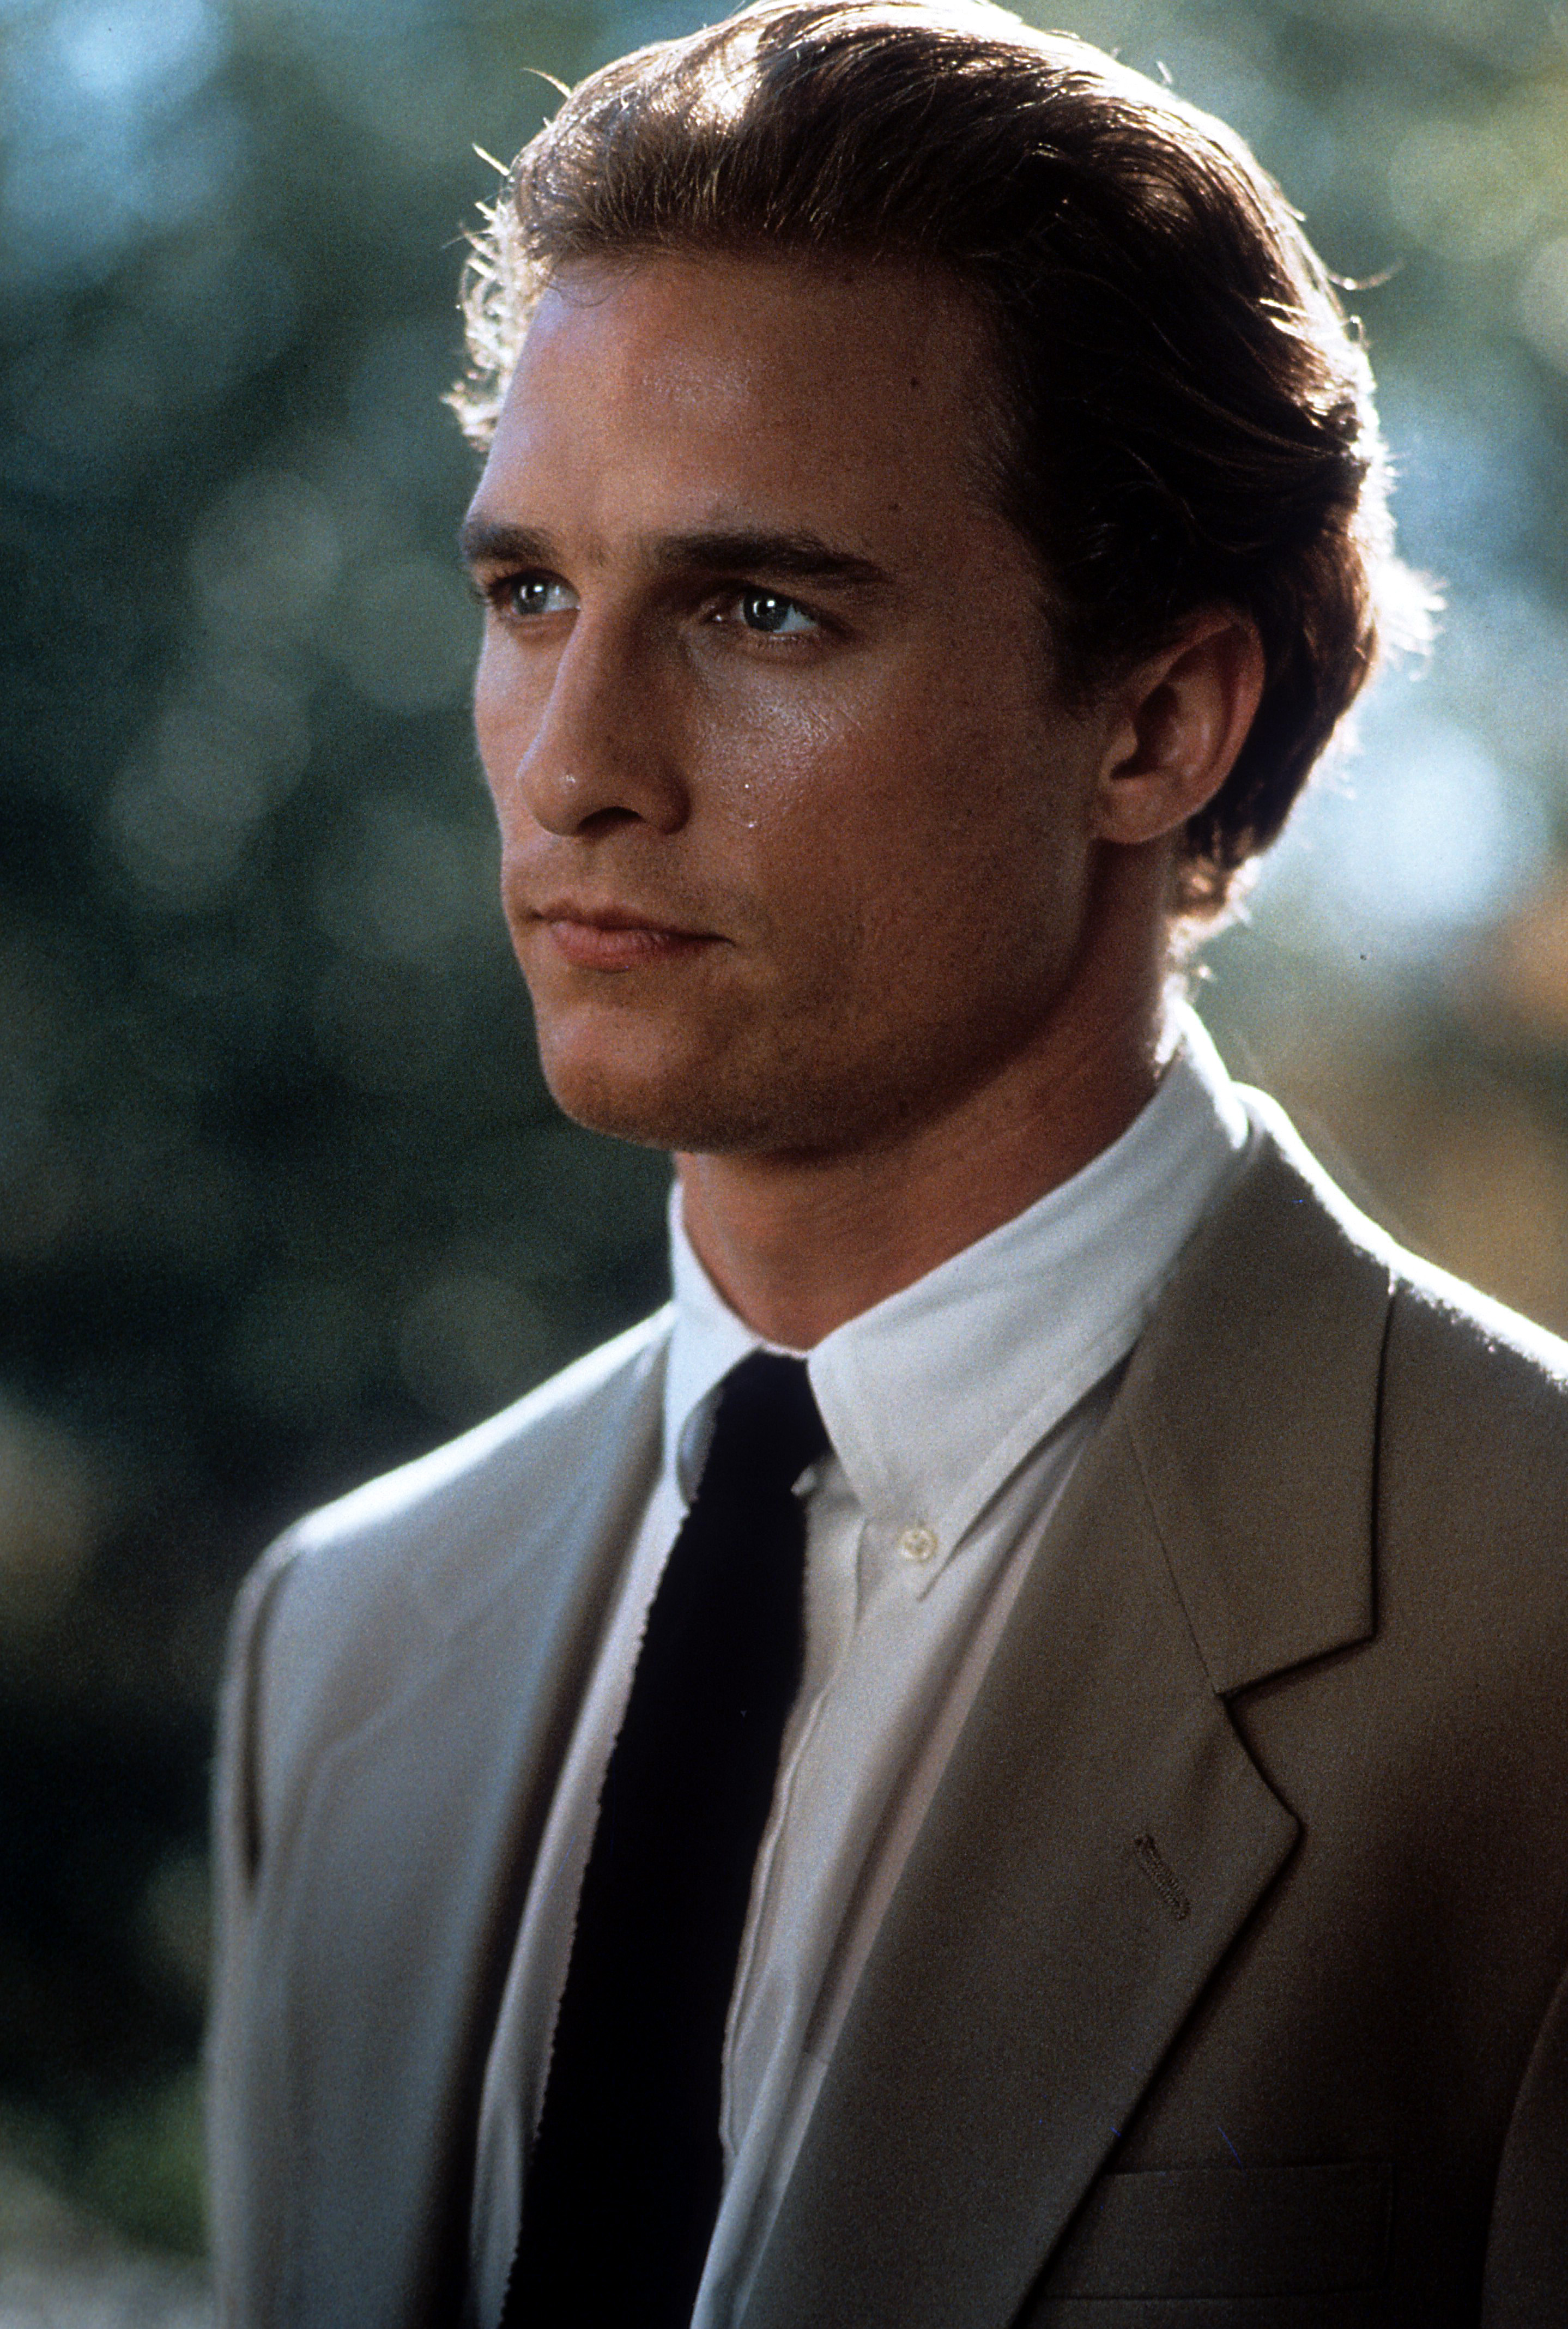 Un actor estadounidense en una escena de la película "A Time To Kill" en 1996 | Foto: Getty Images